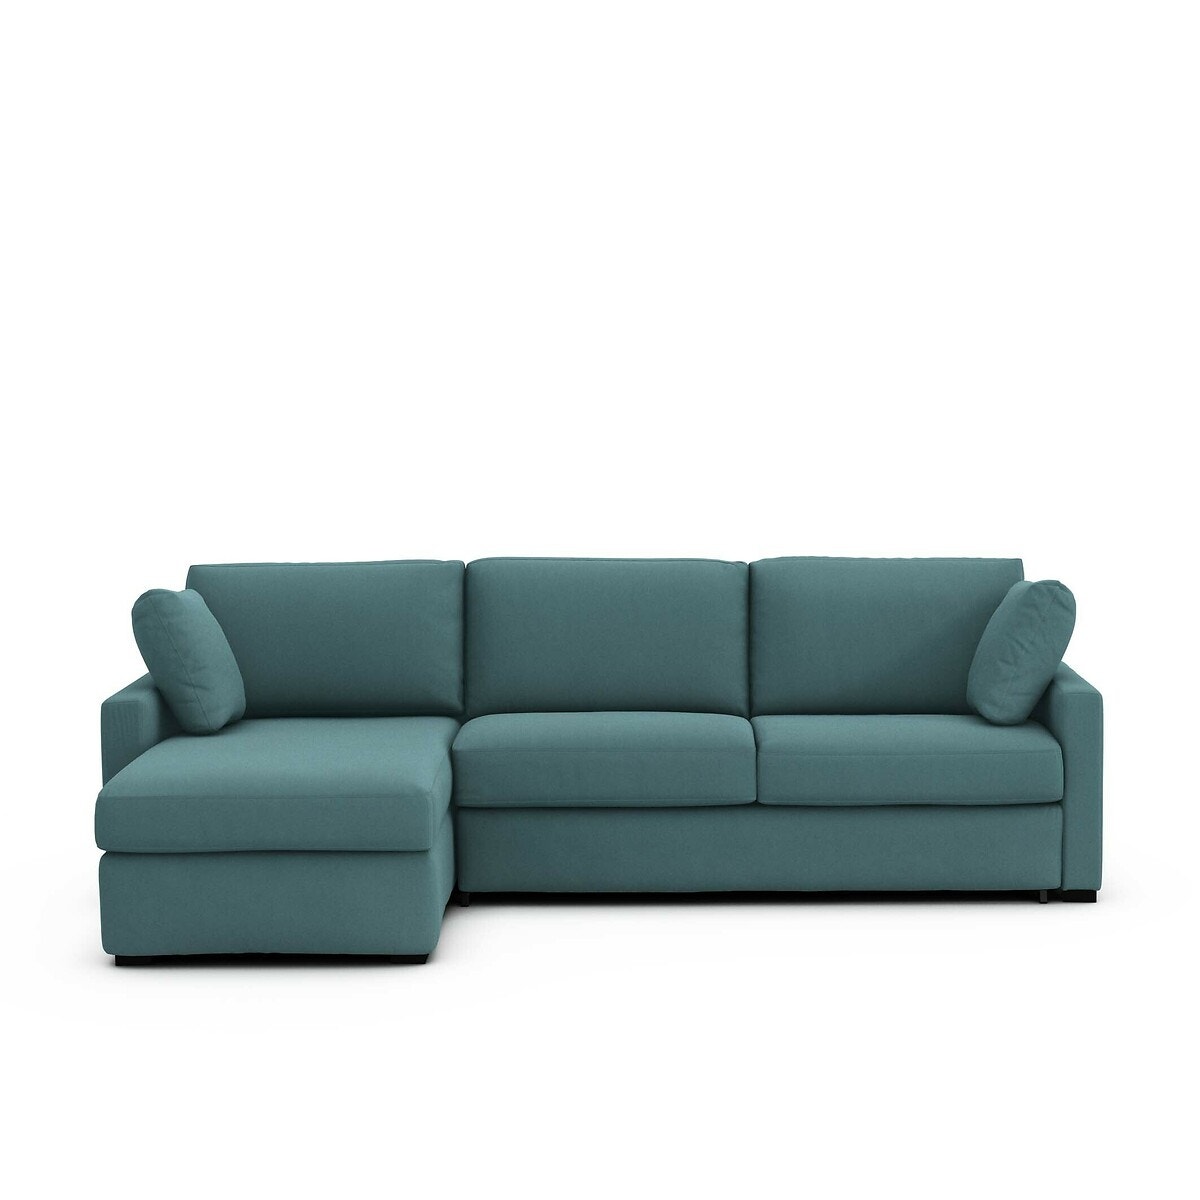 Σπίτι > Έπιπλα > Καθιστικό > Καναπέδες > Γωνιακοί καναπέδες Γωνιακός καναπές-κρεβάτι από βαμβάκι με στρώμα latex Μ160xΠ265xΥ85cm